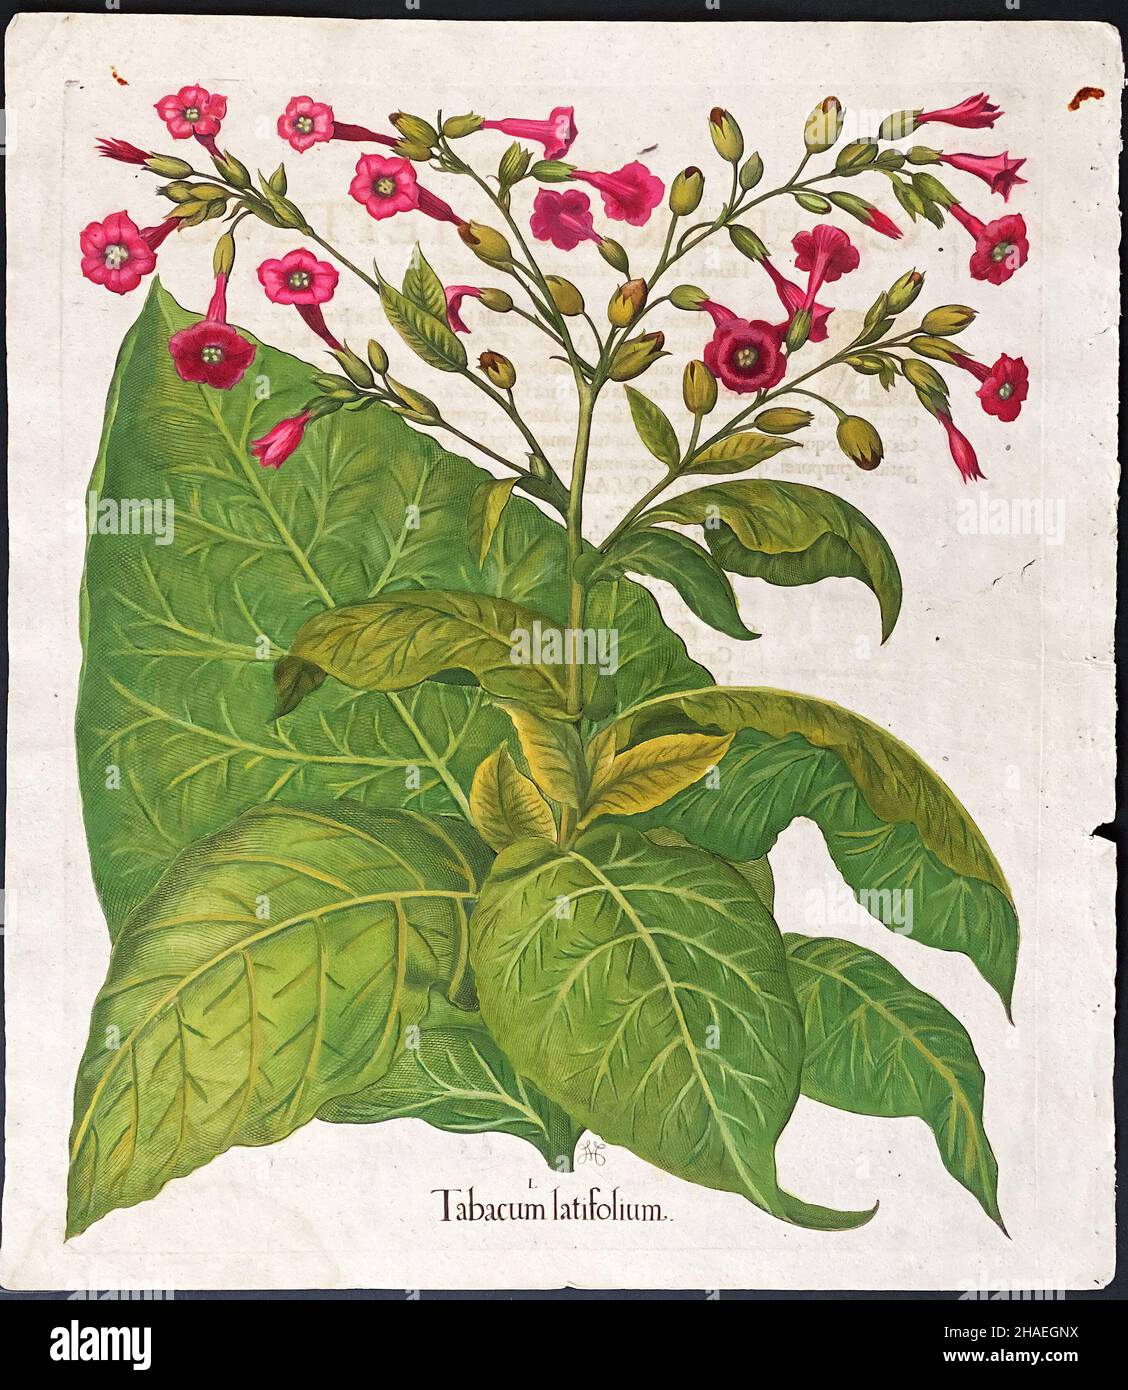 Usine de tabac; tabacum latifolium – Art de Basilius Besler (1561–1629) – tabac à grandes feuilles Banque D'Images